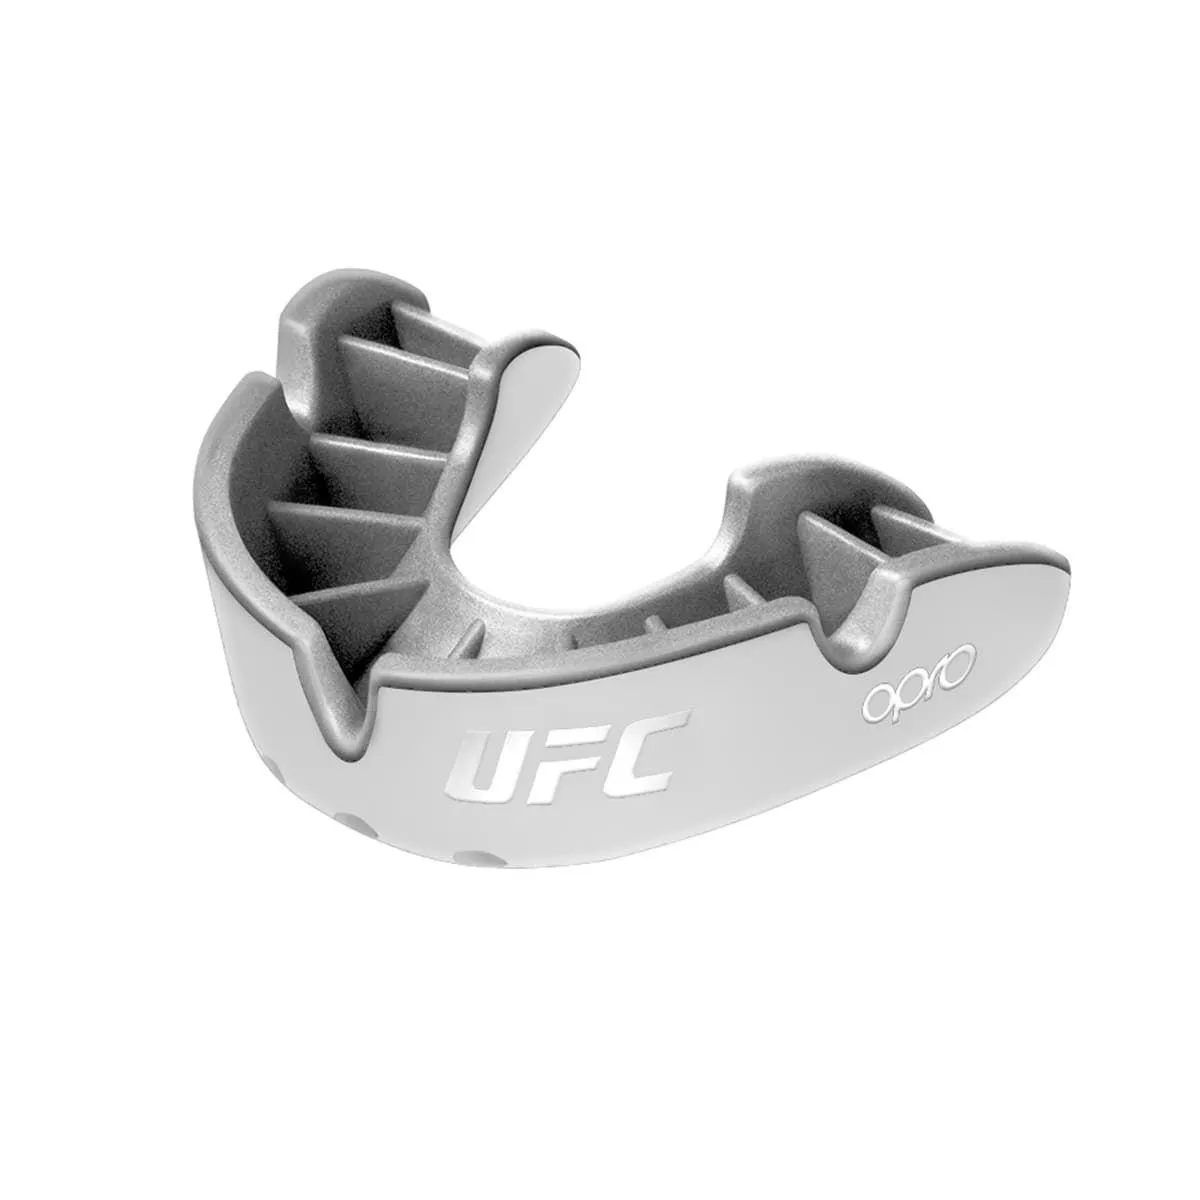 Protège-dents OPRO "UFC" argent 2022 blanc/argent